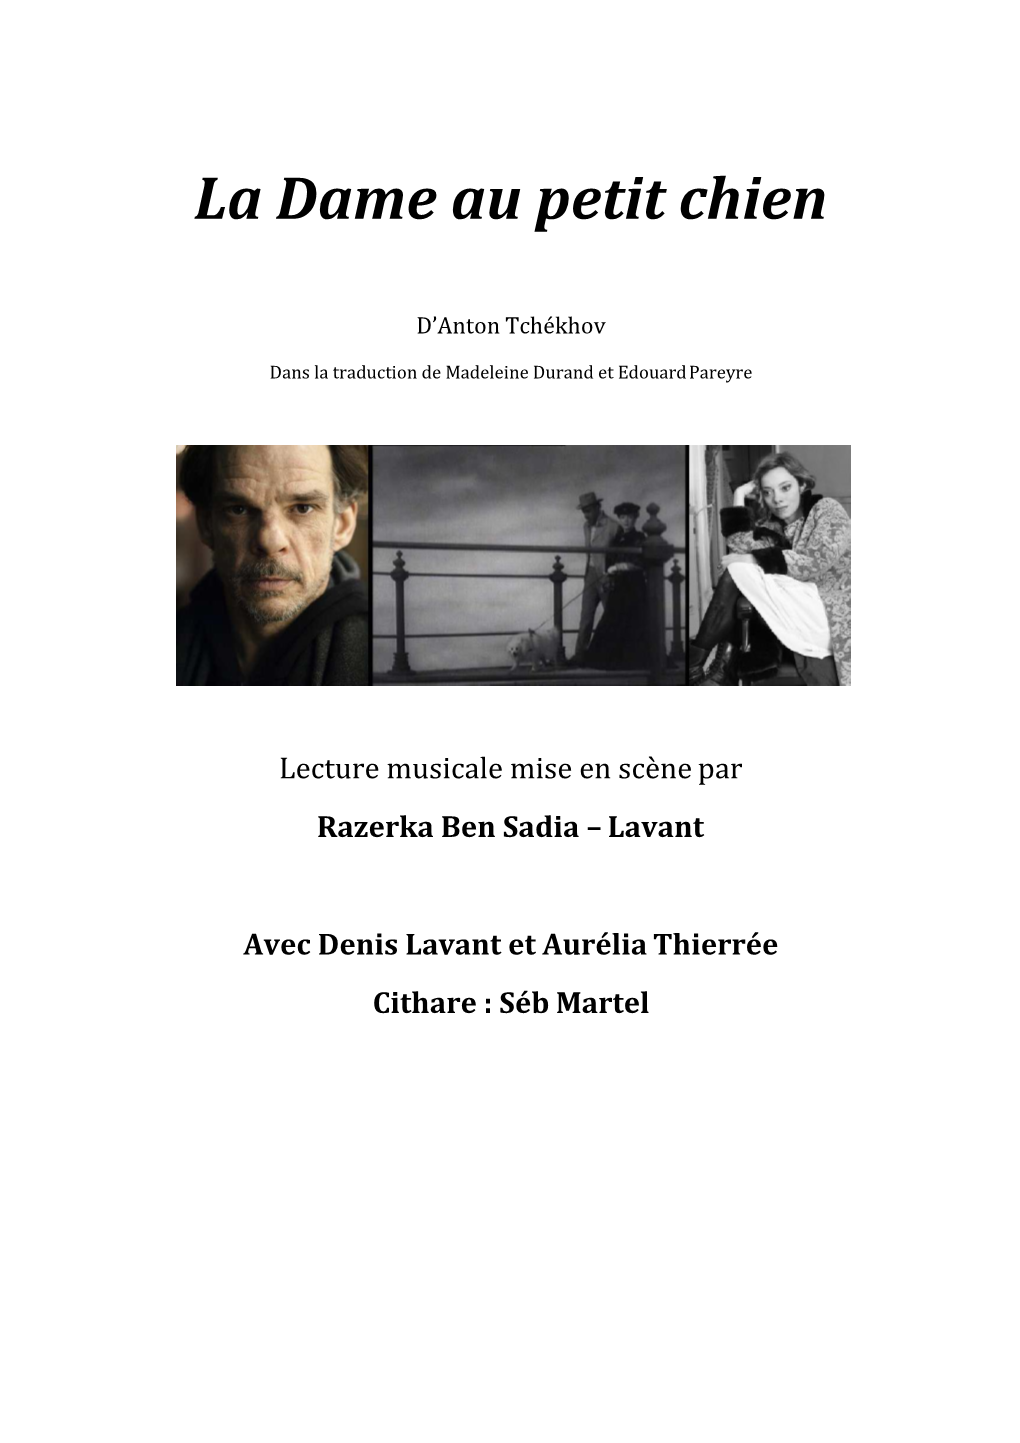 Dossier Lecture La Dame Au Petit Chien R. Ben Sadia Lavant Avec